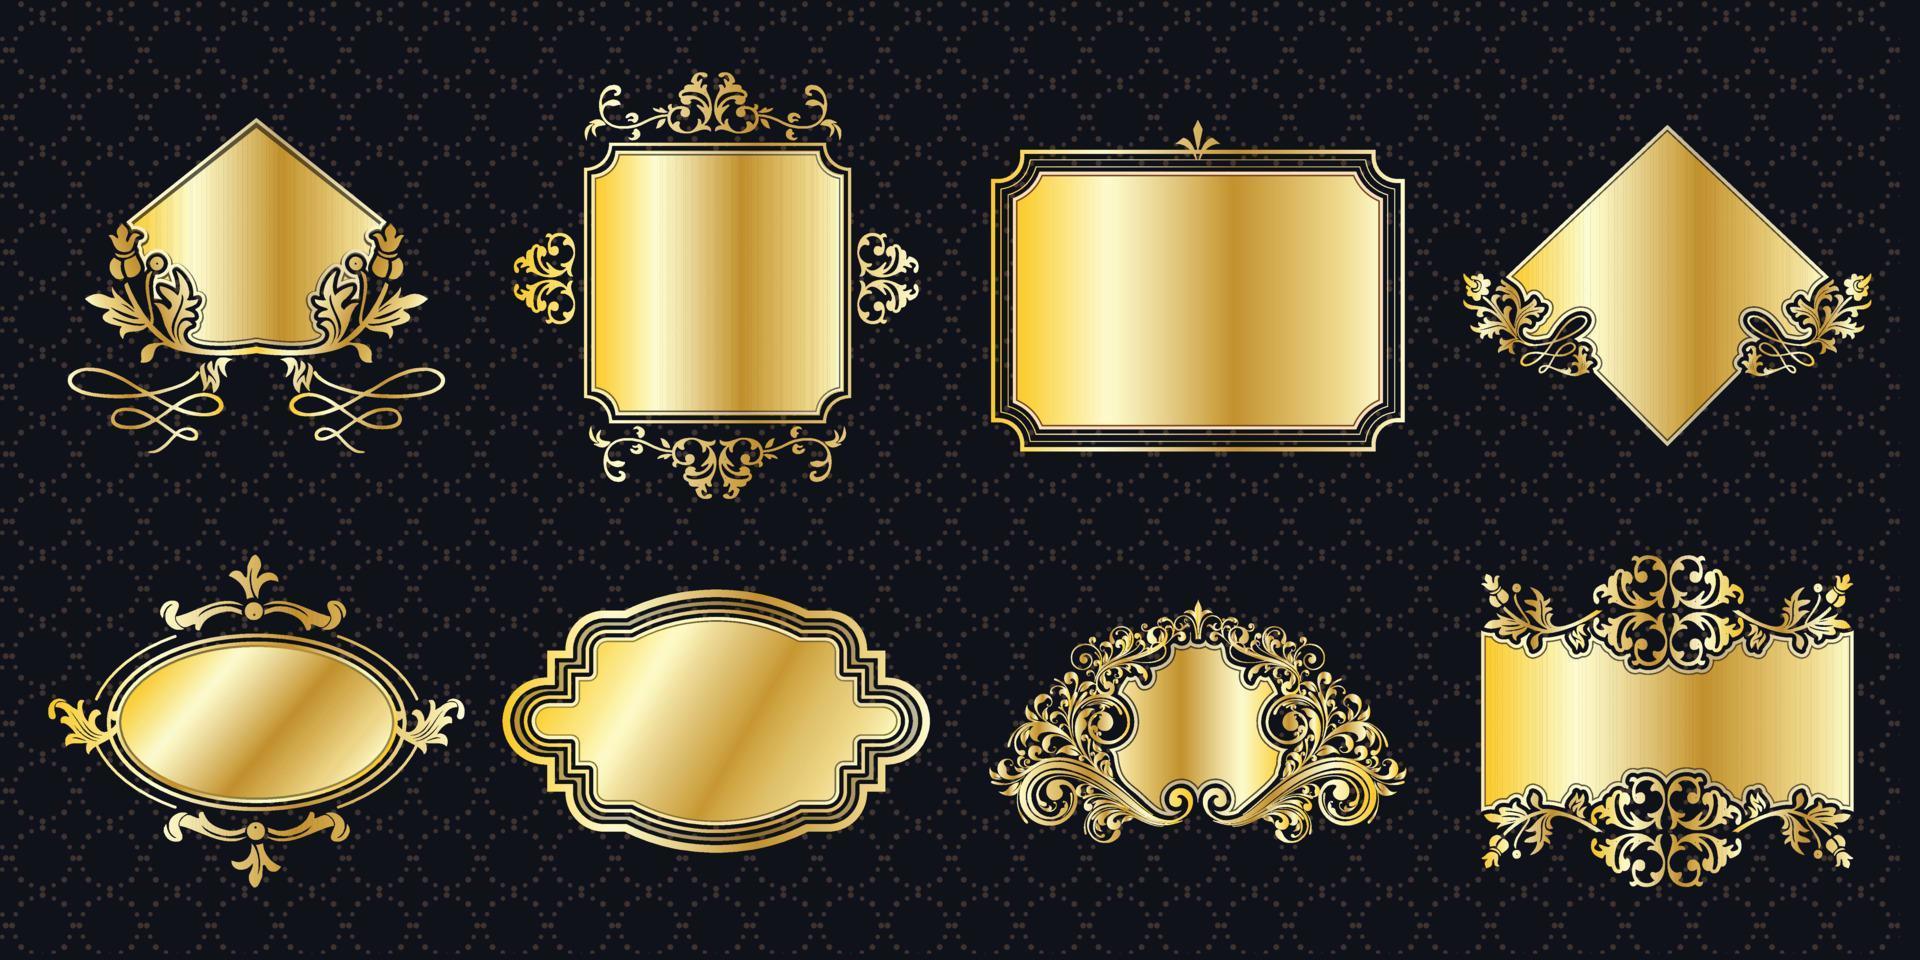 frame set border ornate vintage golden classic ornamental antique elements graphic banner decorationelegant collection bundle vector